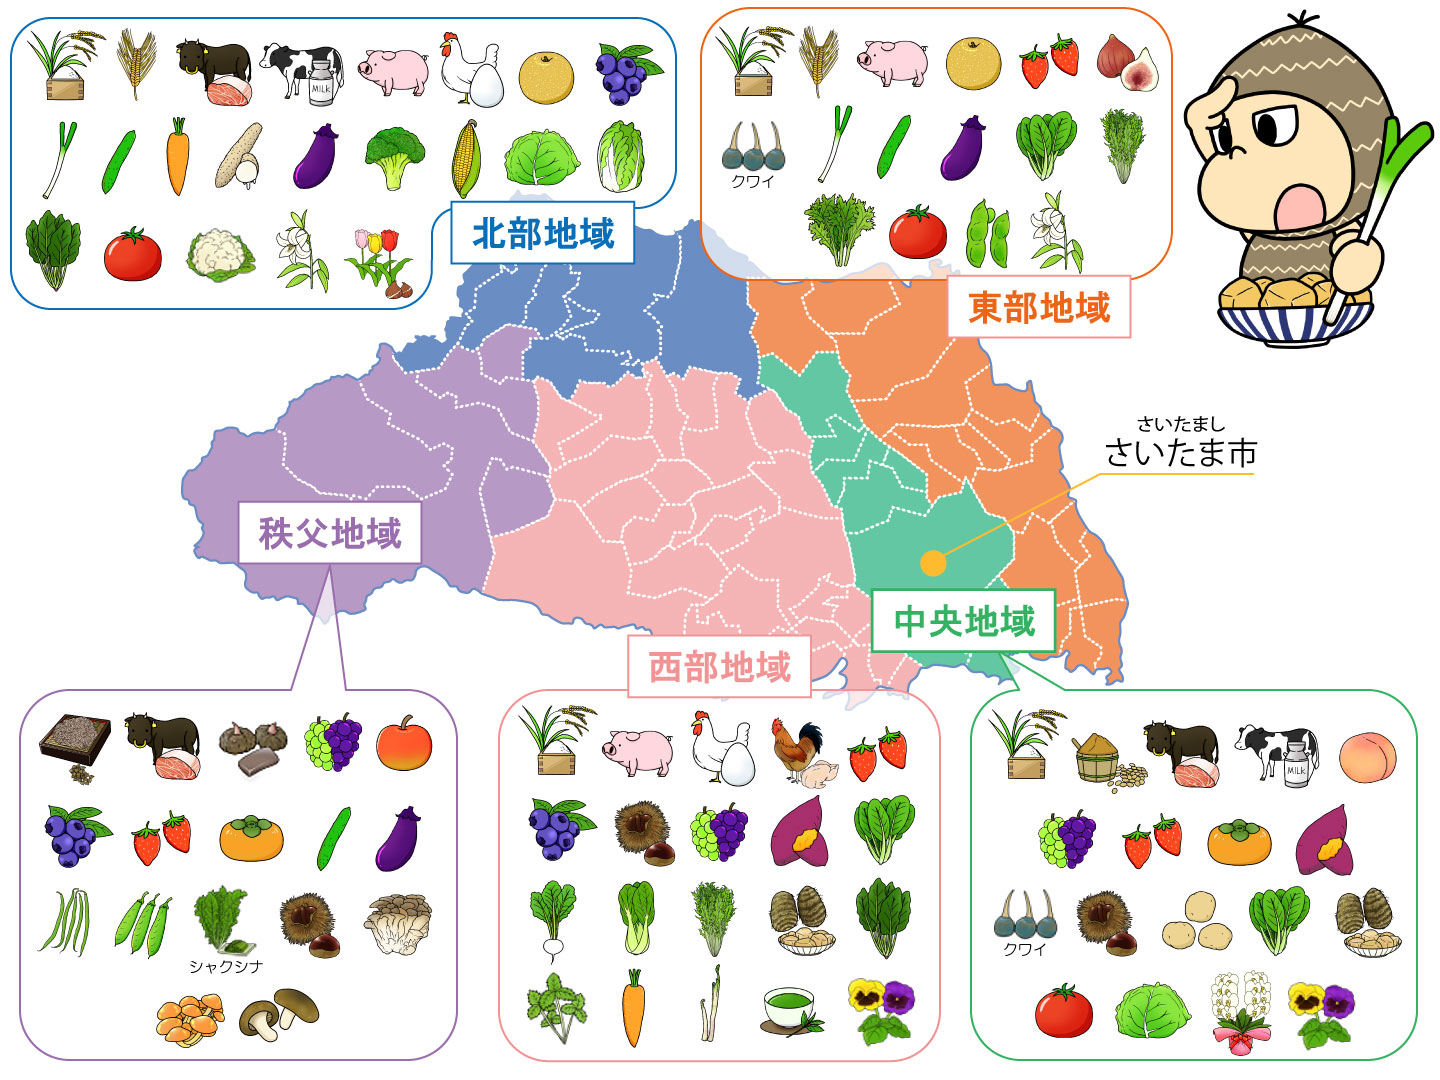 埼玉県農産物分布図